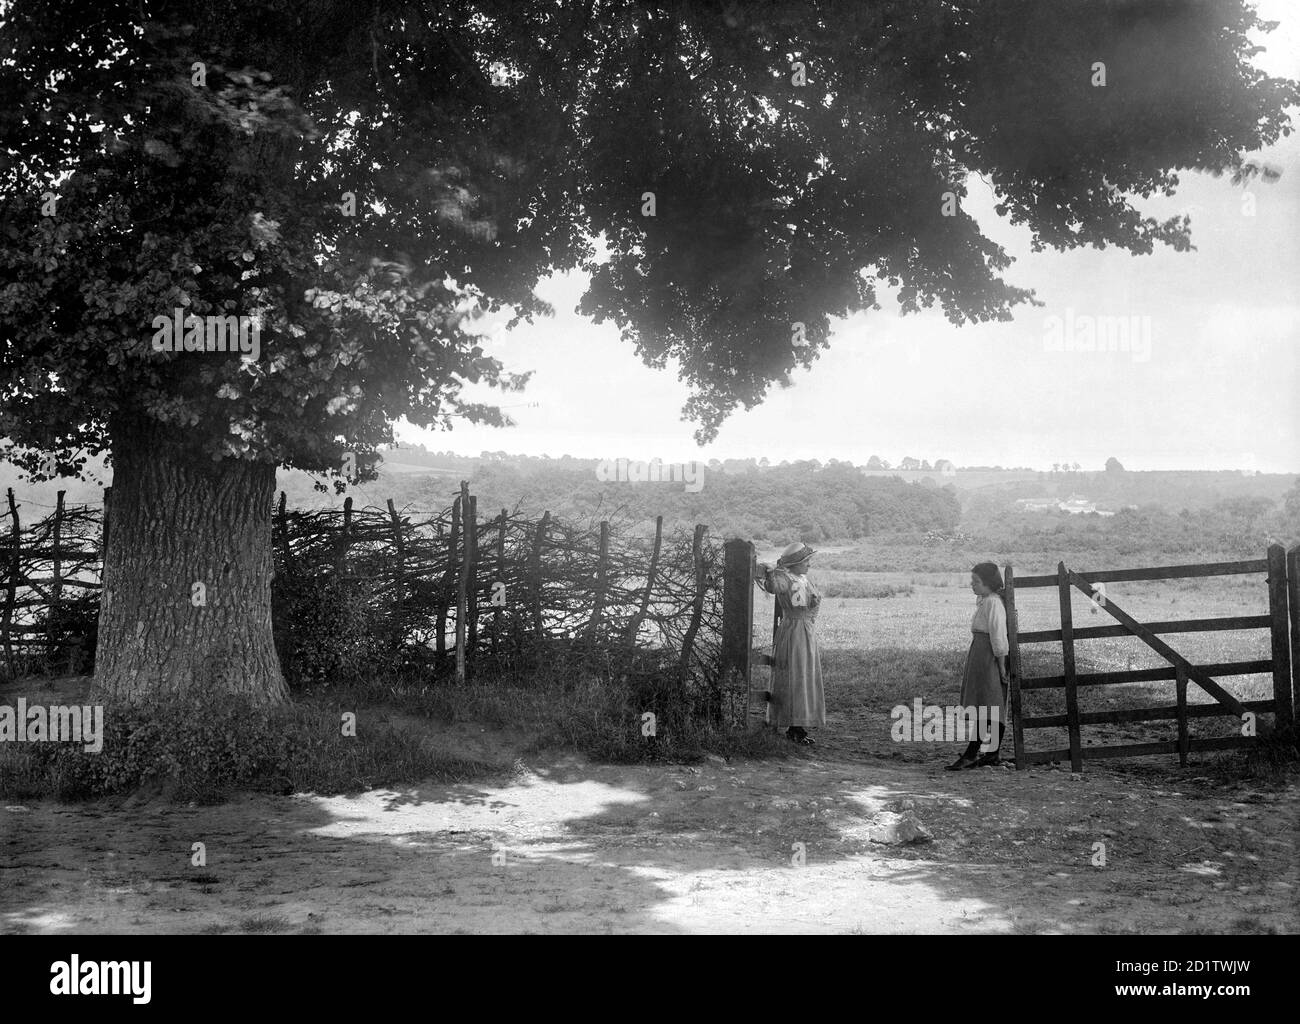 ÖFFNEN SIE BRASENOSE, Horspath, South Oxfordshire. Ein malerischer Blick auf die Landschaft von Oxfordshire mit zwei Frauen, die an einem Tor stehen. Fotografiert von Henry Taunt im Juli 1916. Stockfoto